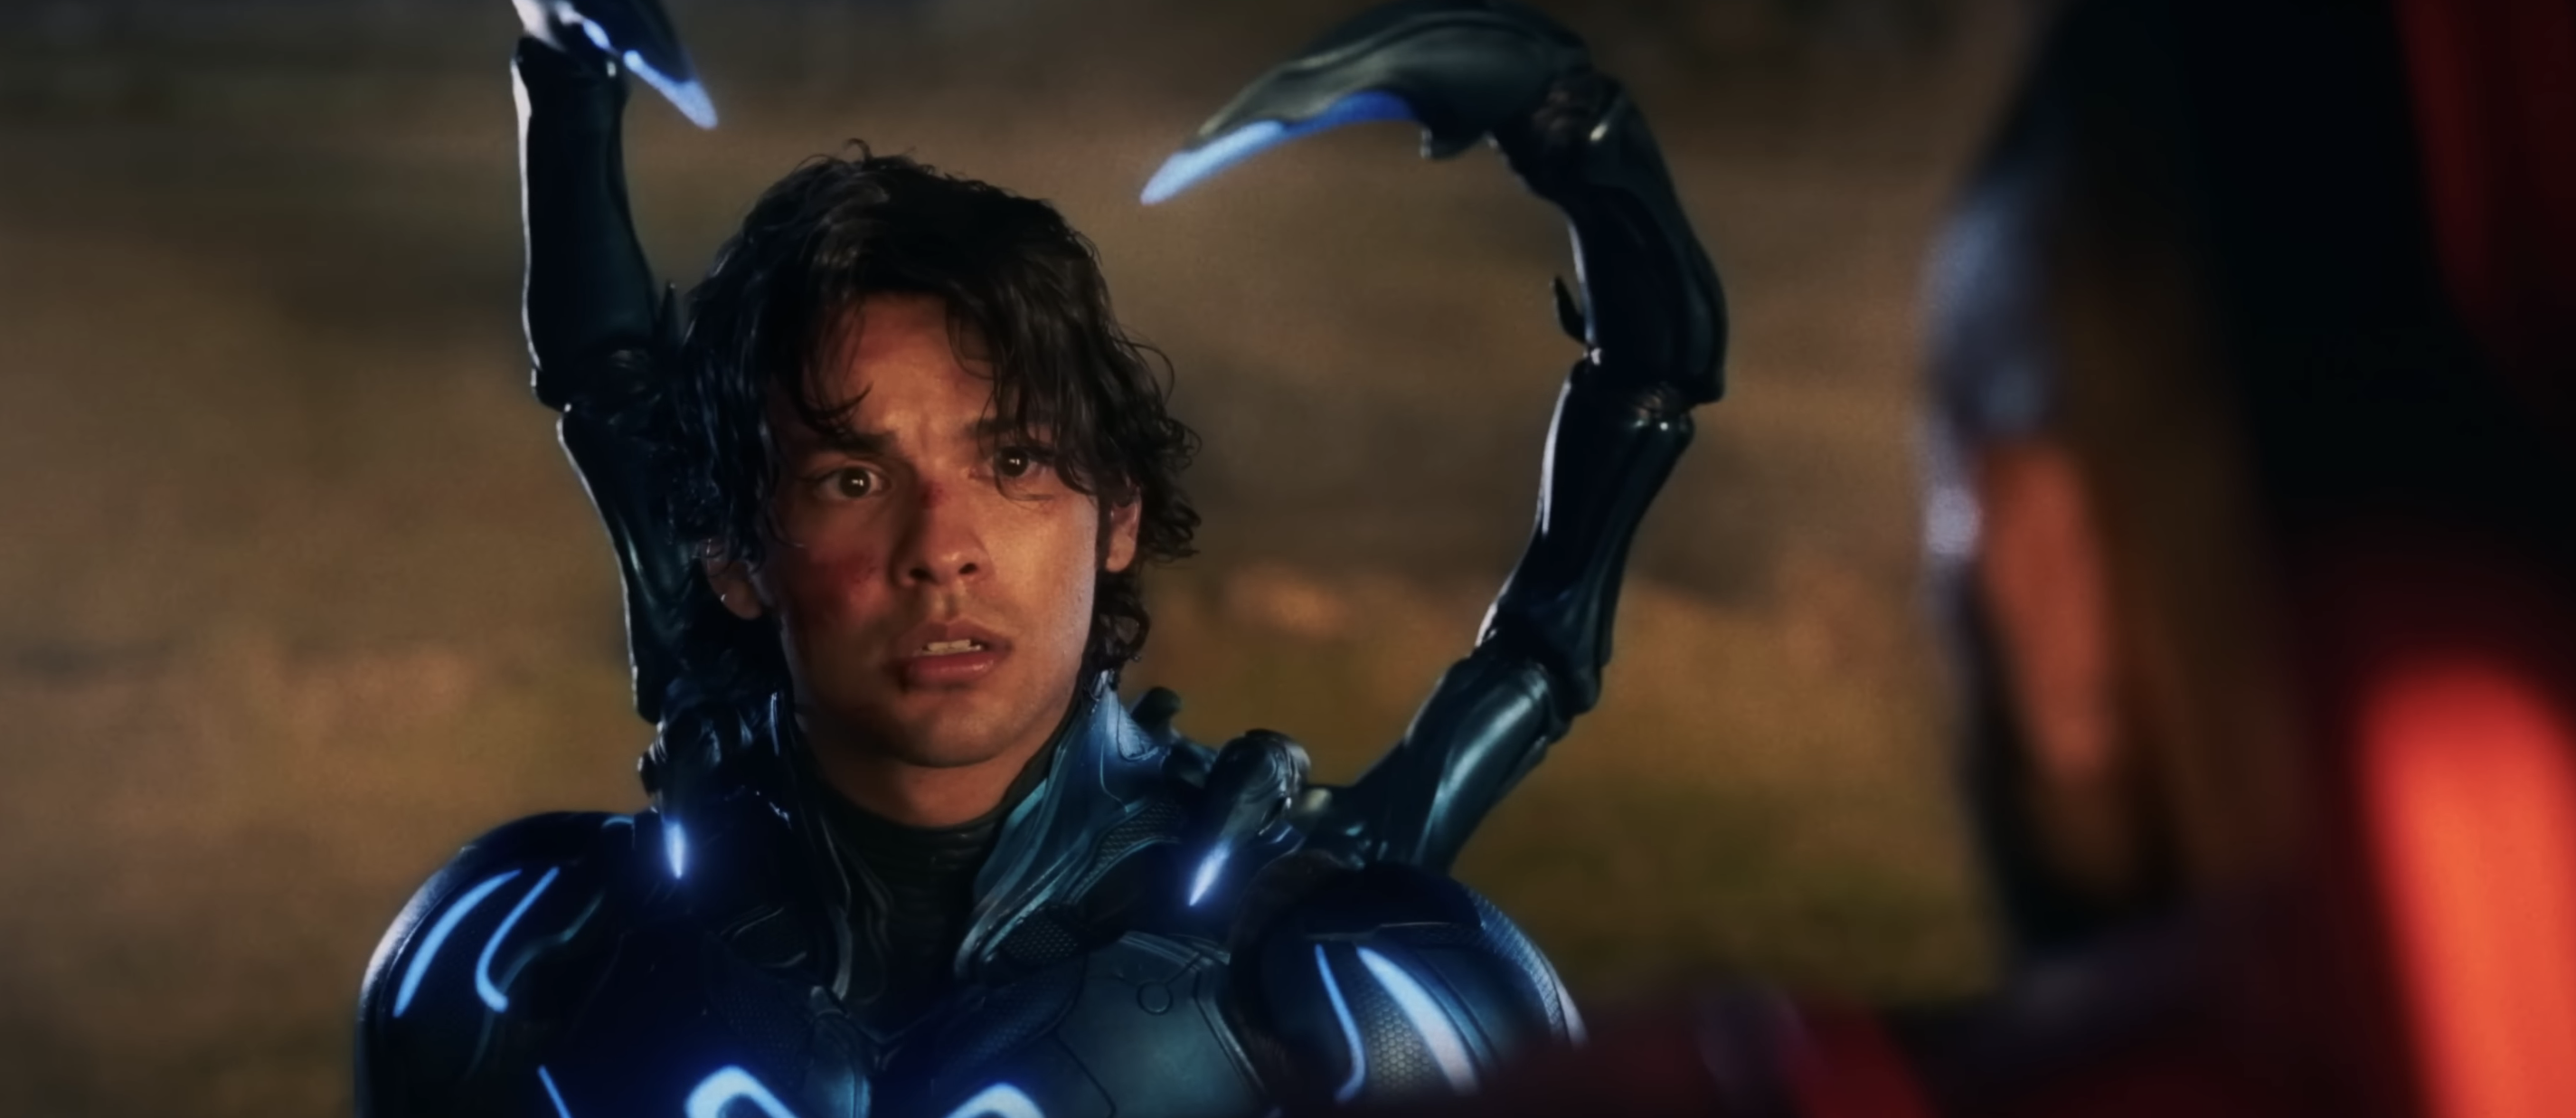 Xolo Maridueña Is 'Blue Beetle' In DC Film: Release Date, Cast